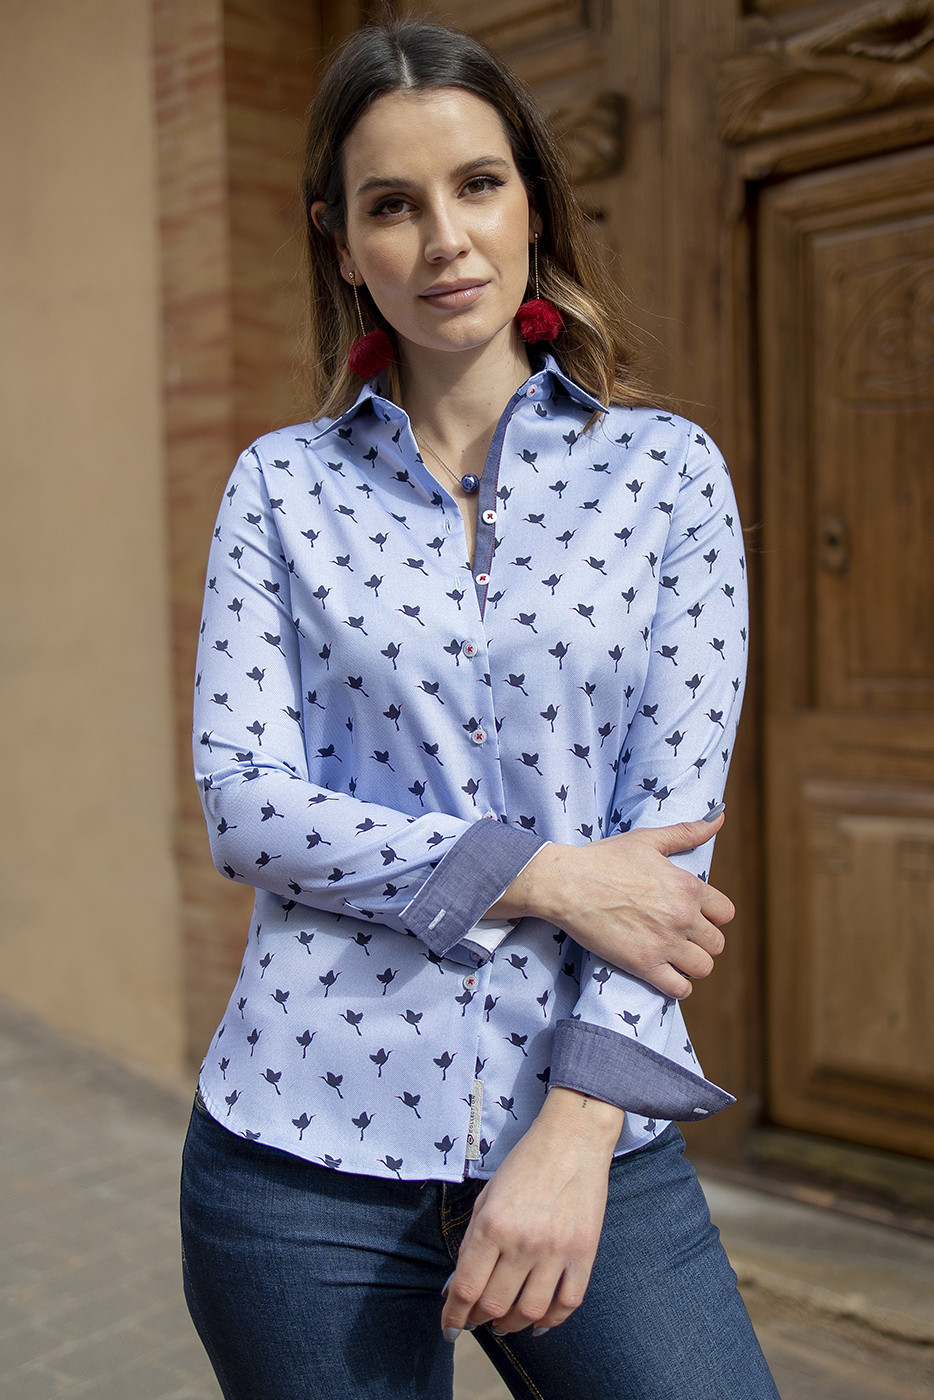 Camisa de mujer en tejido estampado azul con contraste en botonadura